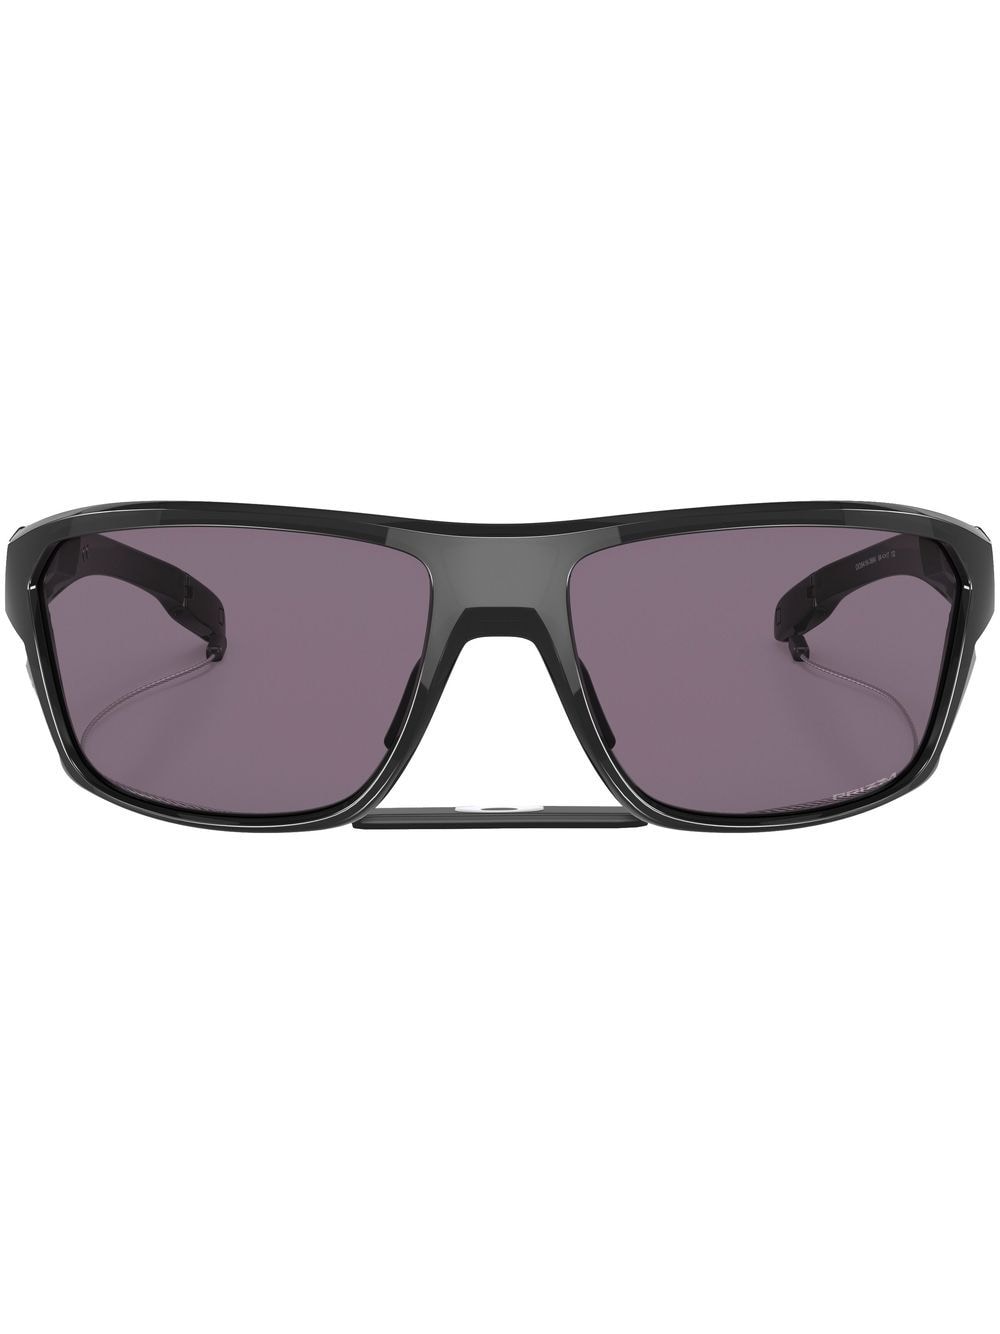 Oakley Split Sunglasses - Farfetch